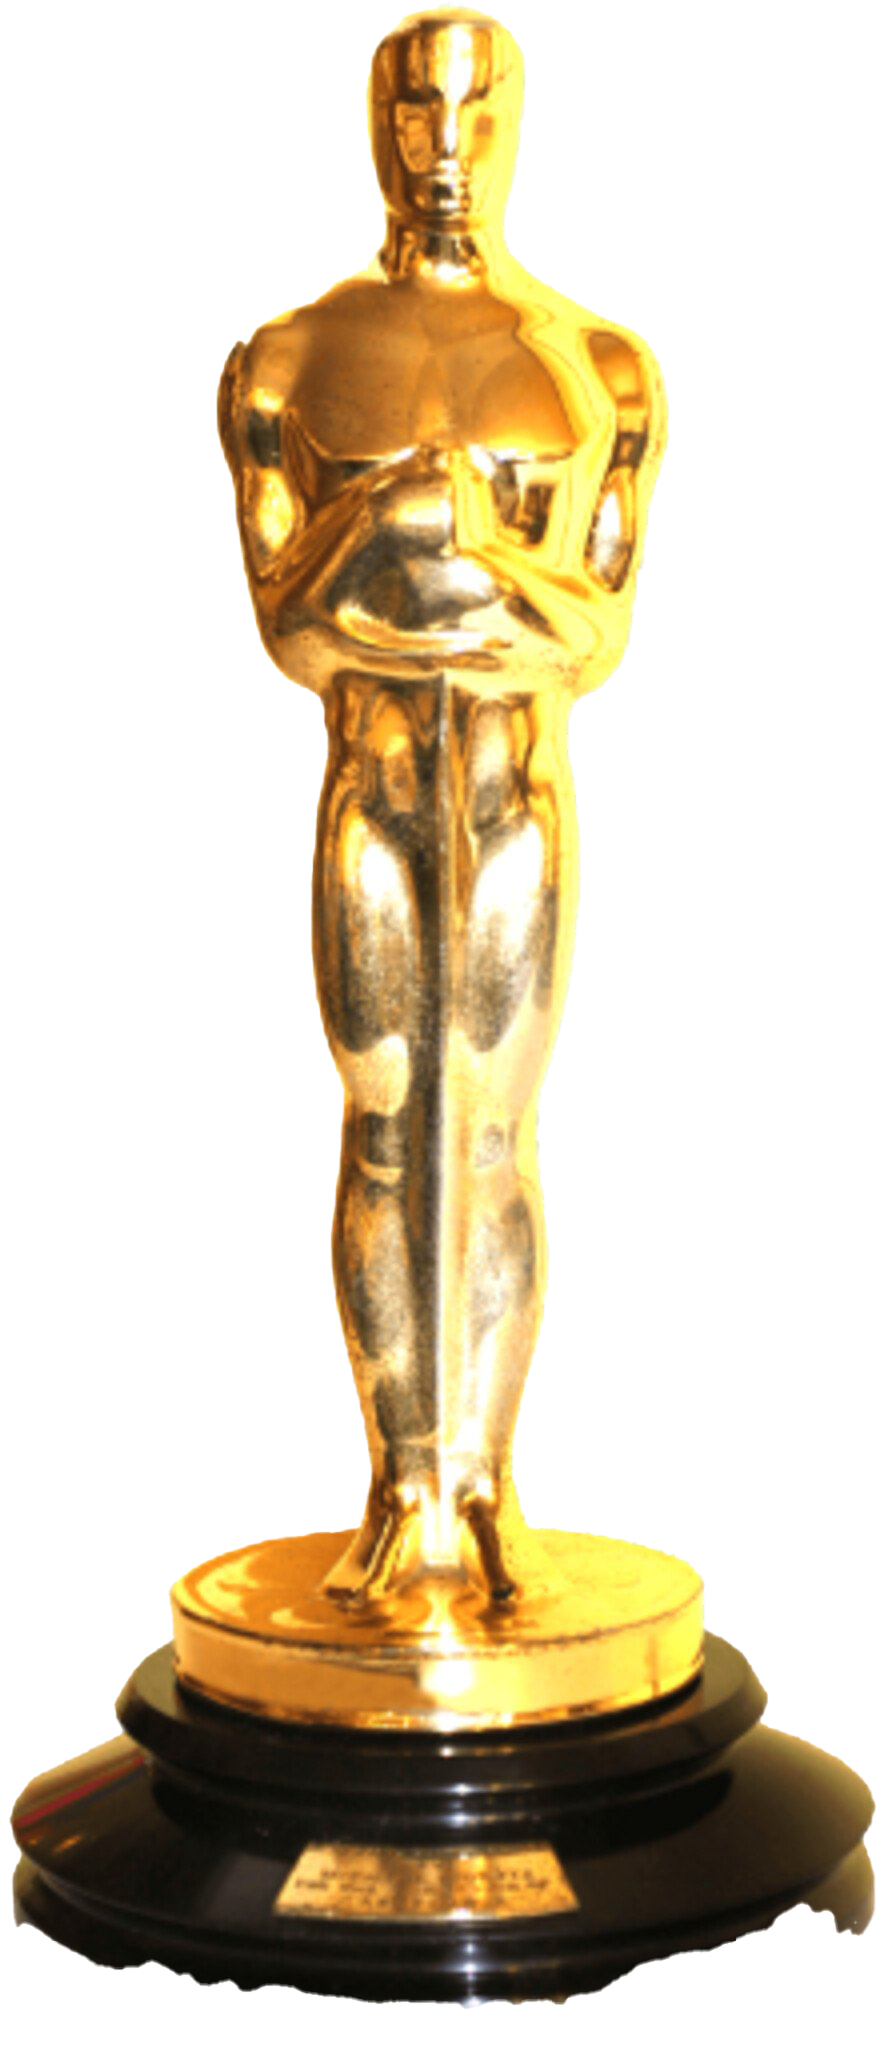 Oscar Academy Awards PNG Transparent Image | PNG Arts